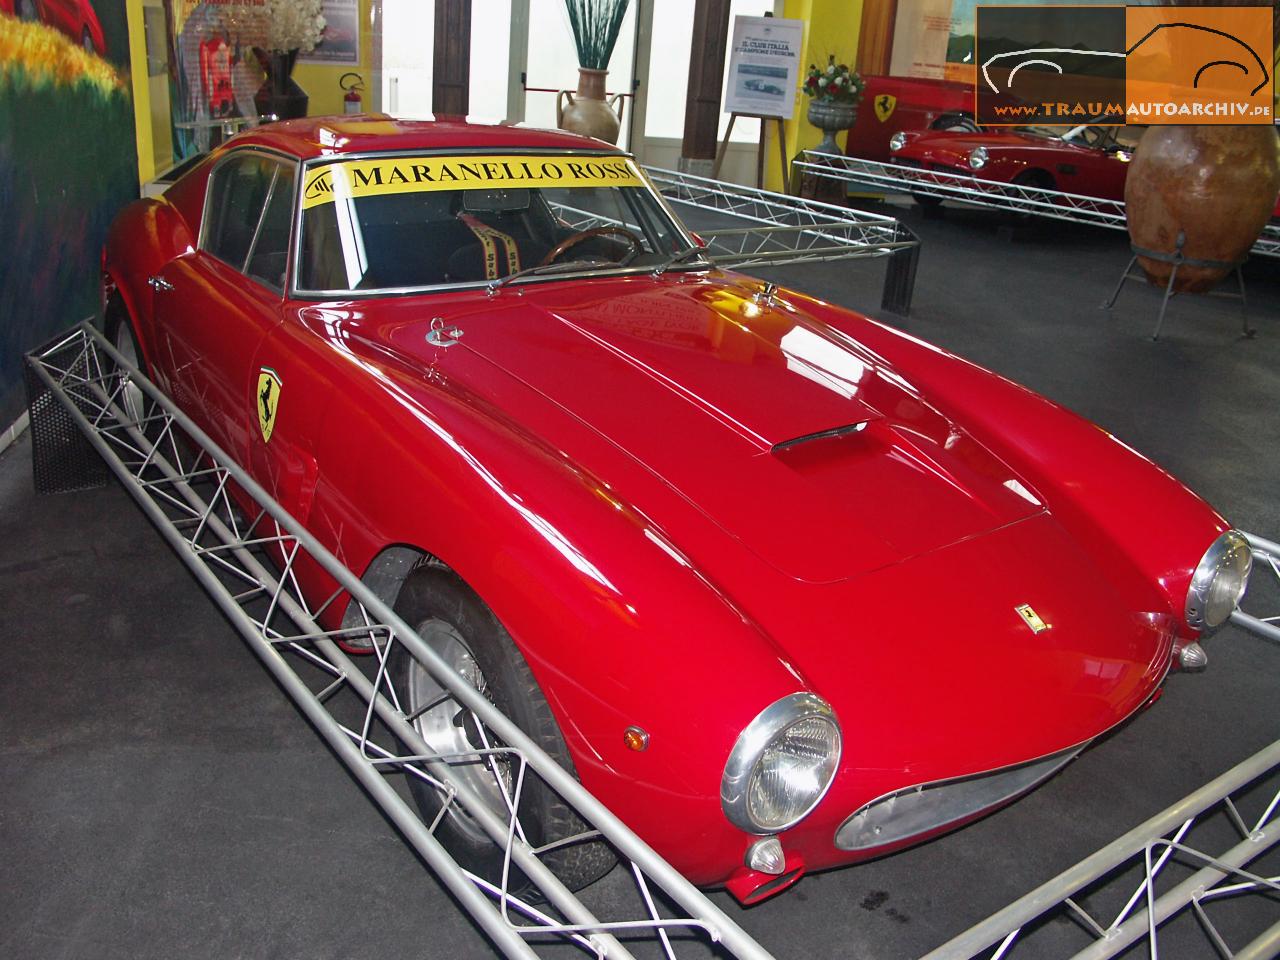 06 - Ferrari 250 GT SWB Competizione '1962.jpg 176.0K